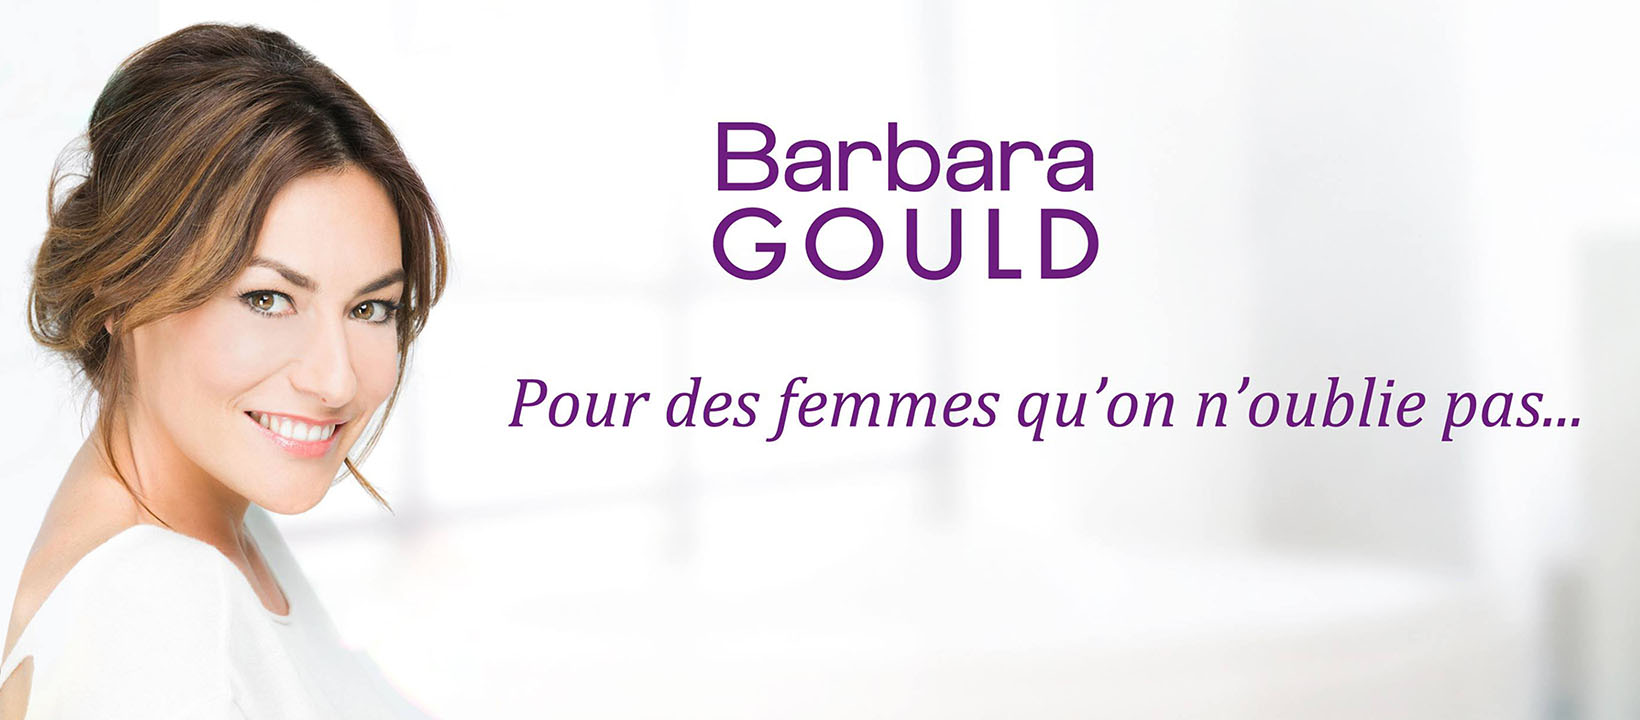 Barbara Gould -Pour des femmes qu'on n'oublie pas ...